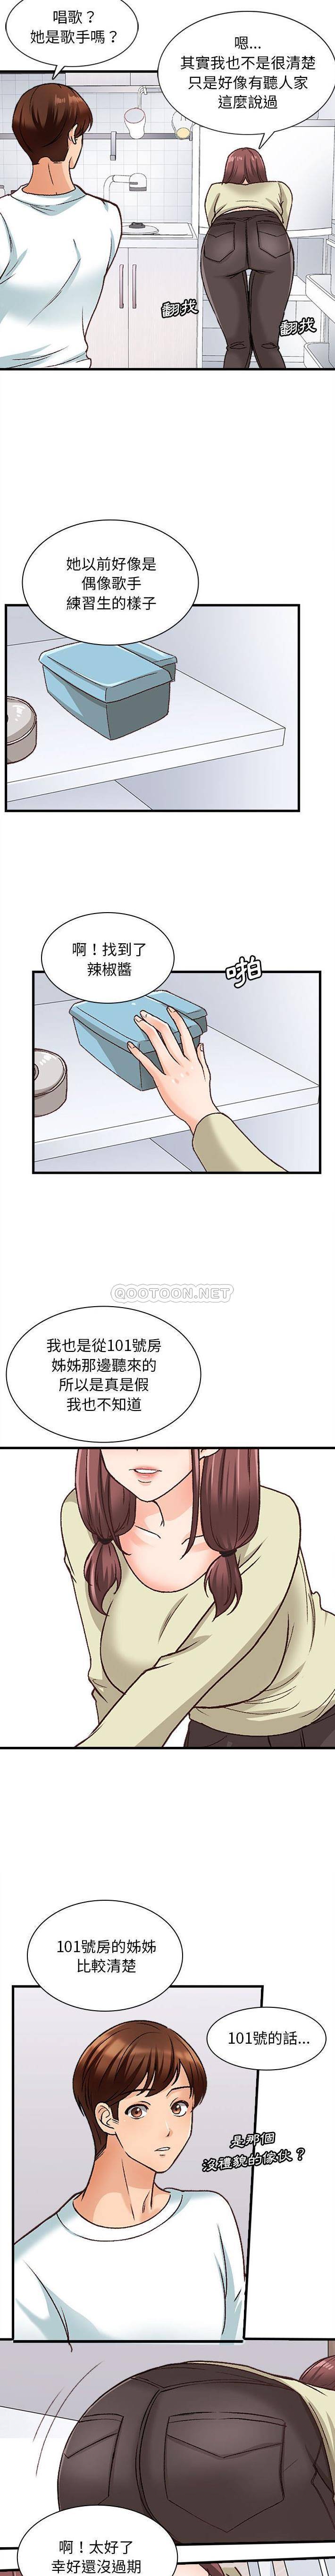 韩国污漫画 幸福公寓 第10话 10